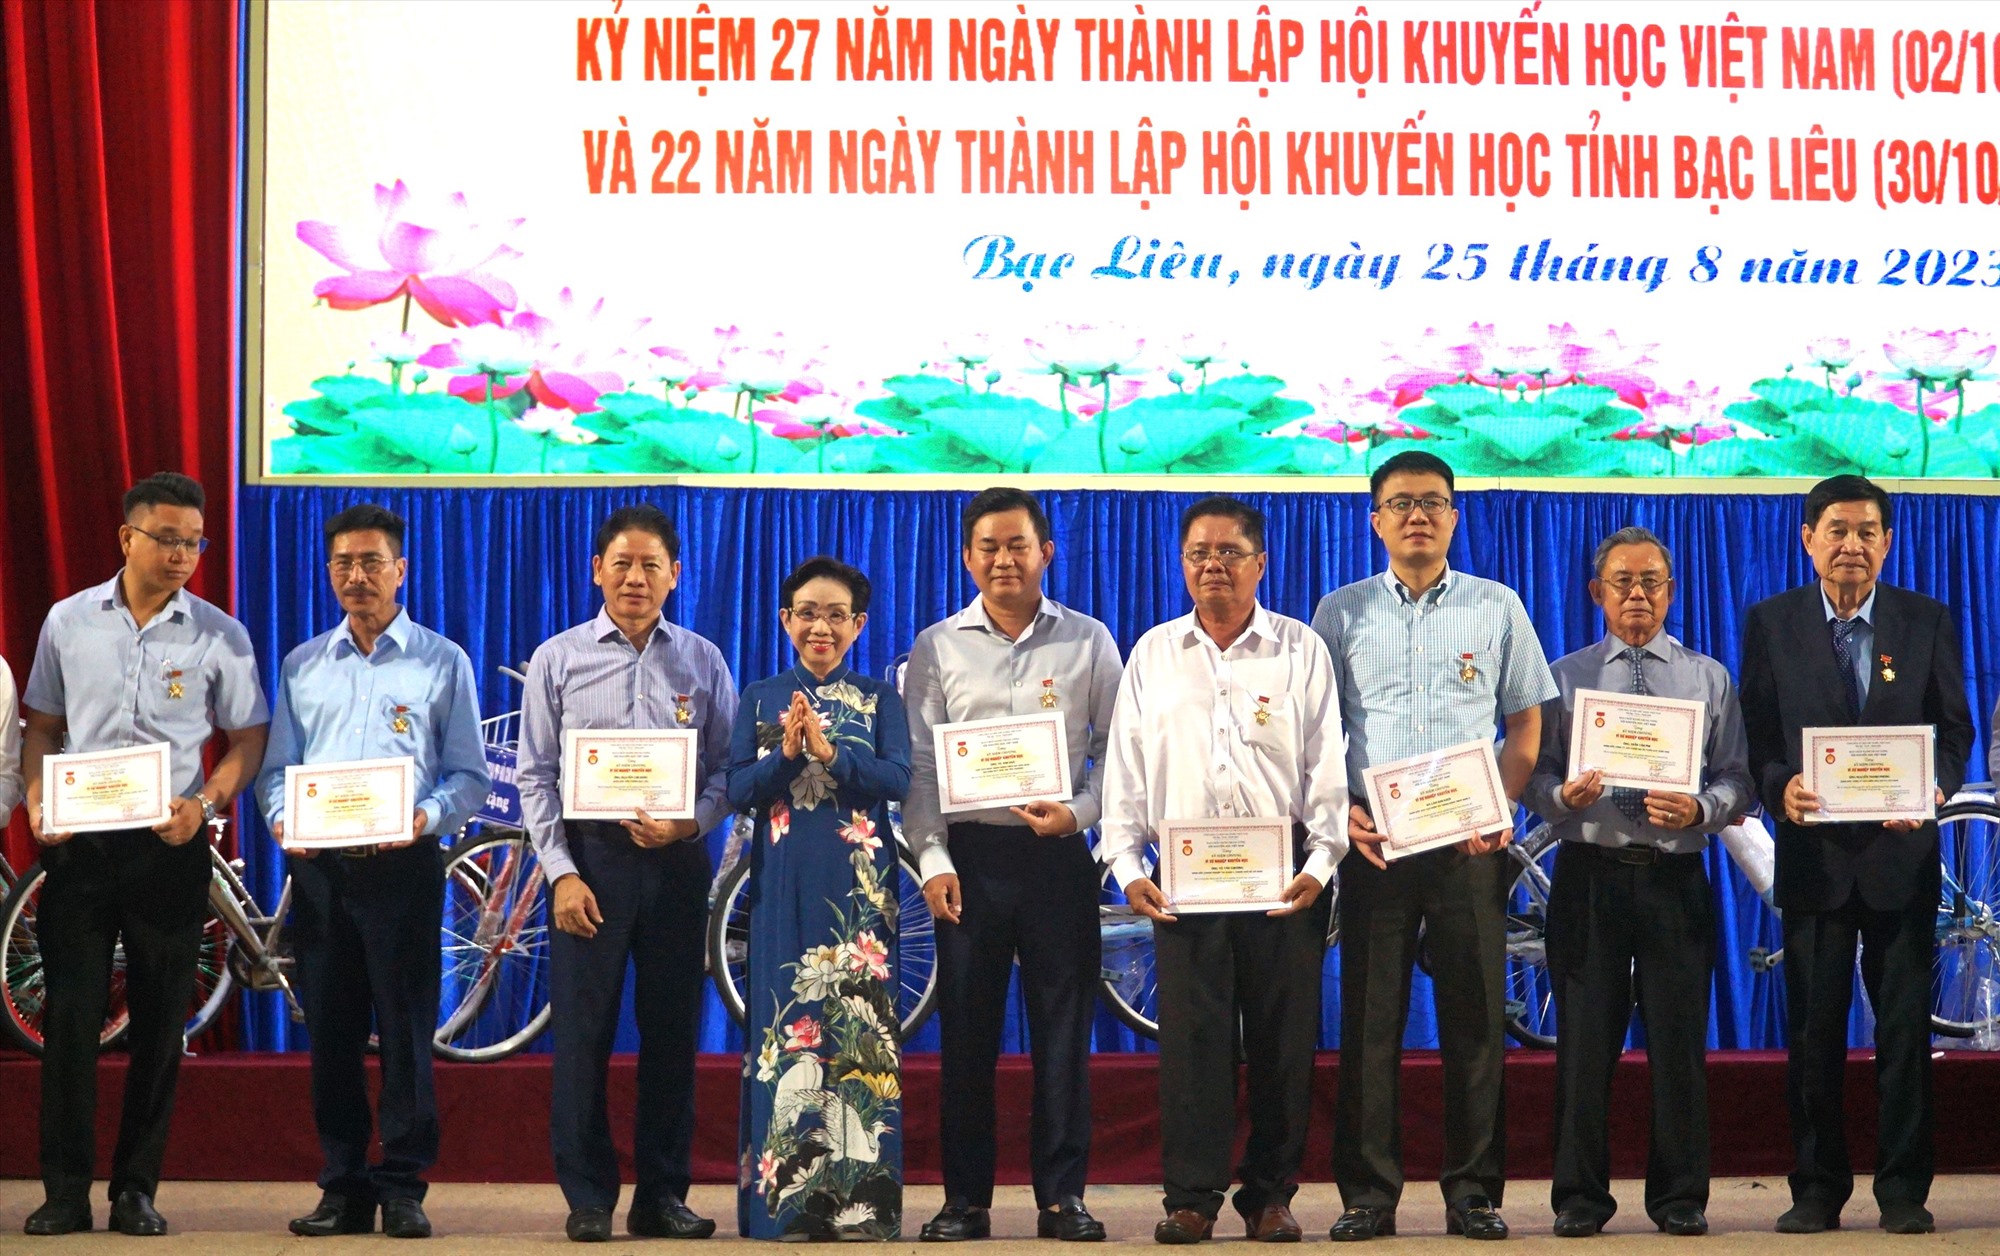 Bà Trương Thị Hiền, Phó Chủ tịch Hội Khuyến học Việt Nam trao Kỷ niệm chương vì sự nghiệp khuyến học cho các đại biểu. Ảnh: Nhật Hồ